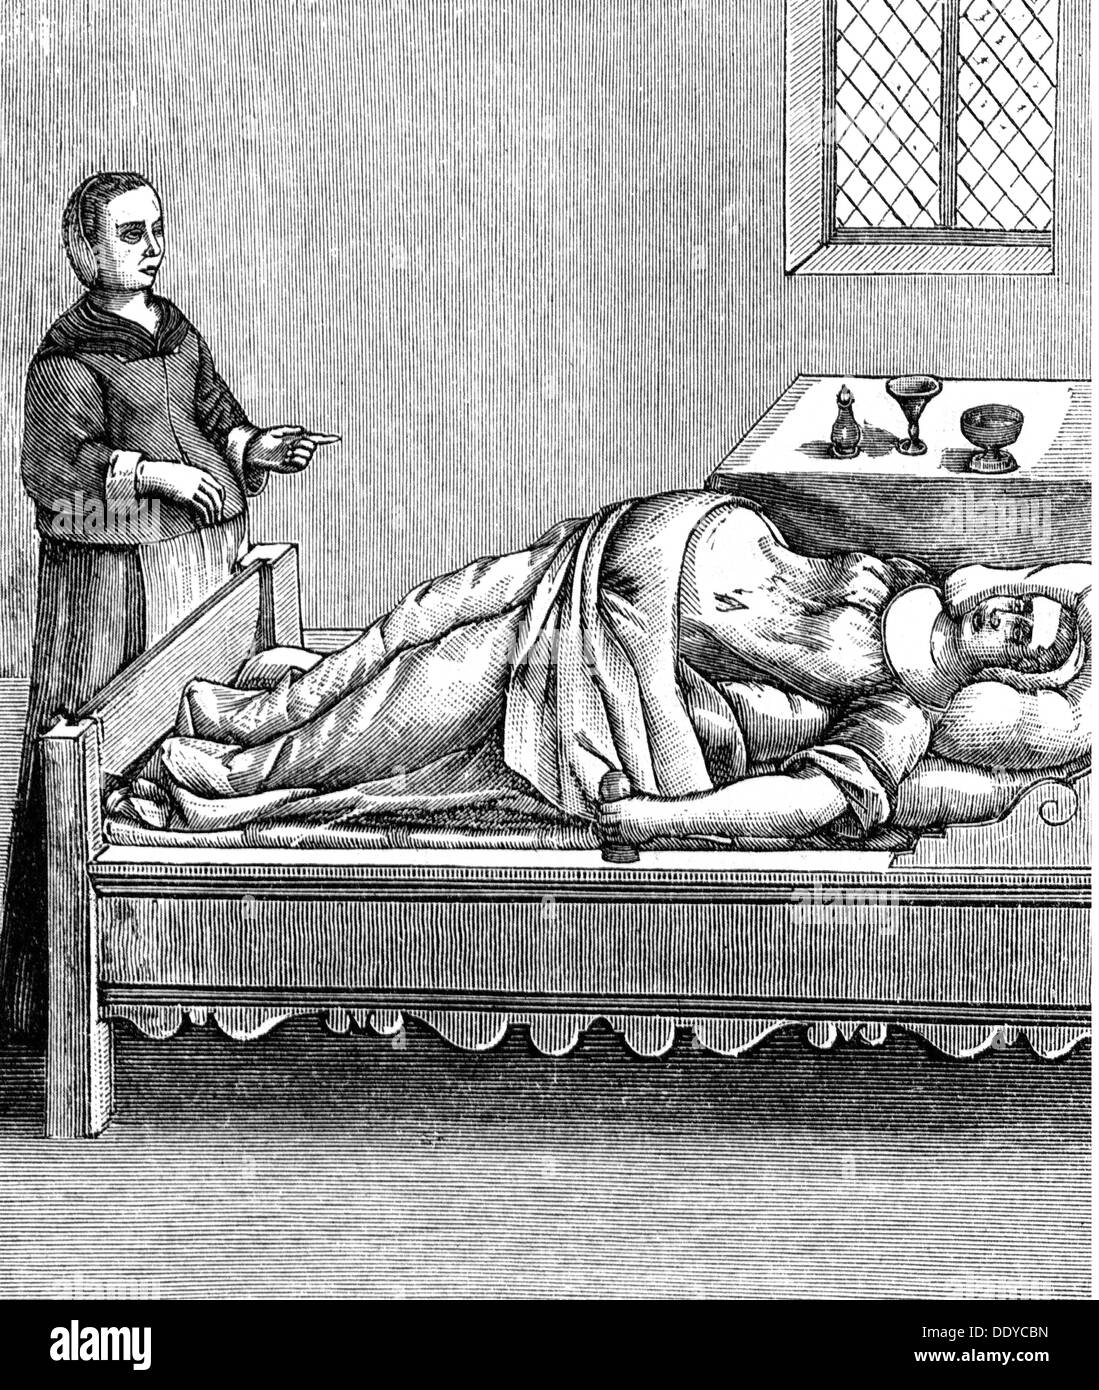 Medizin, Geburt / Gynäkologie, Hebamme mit schwangerer Frau in Position für eine schwere Geburt, nach Scipione Mercurio, 1595, zusätzliche-Rechte-Clearenzen-nicht verfügbar Stockfoto